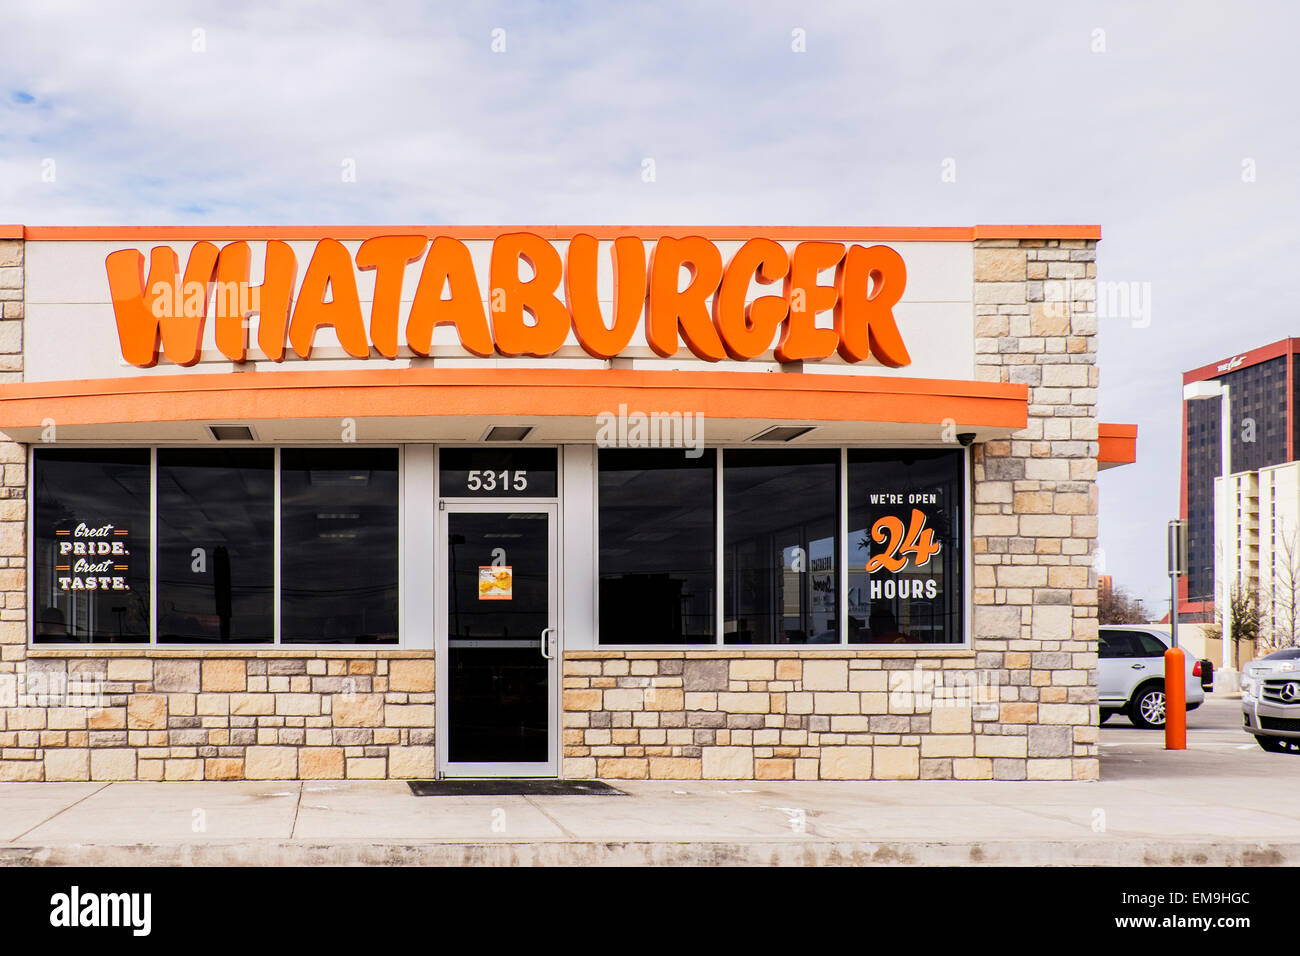 Exterior Oklahoma City Stock Photo - The exterior front of a Whataburger restaurant in Oklahoma City, Oklahoma, USA